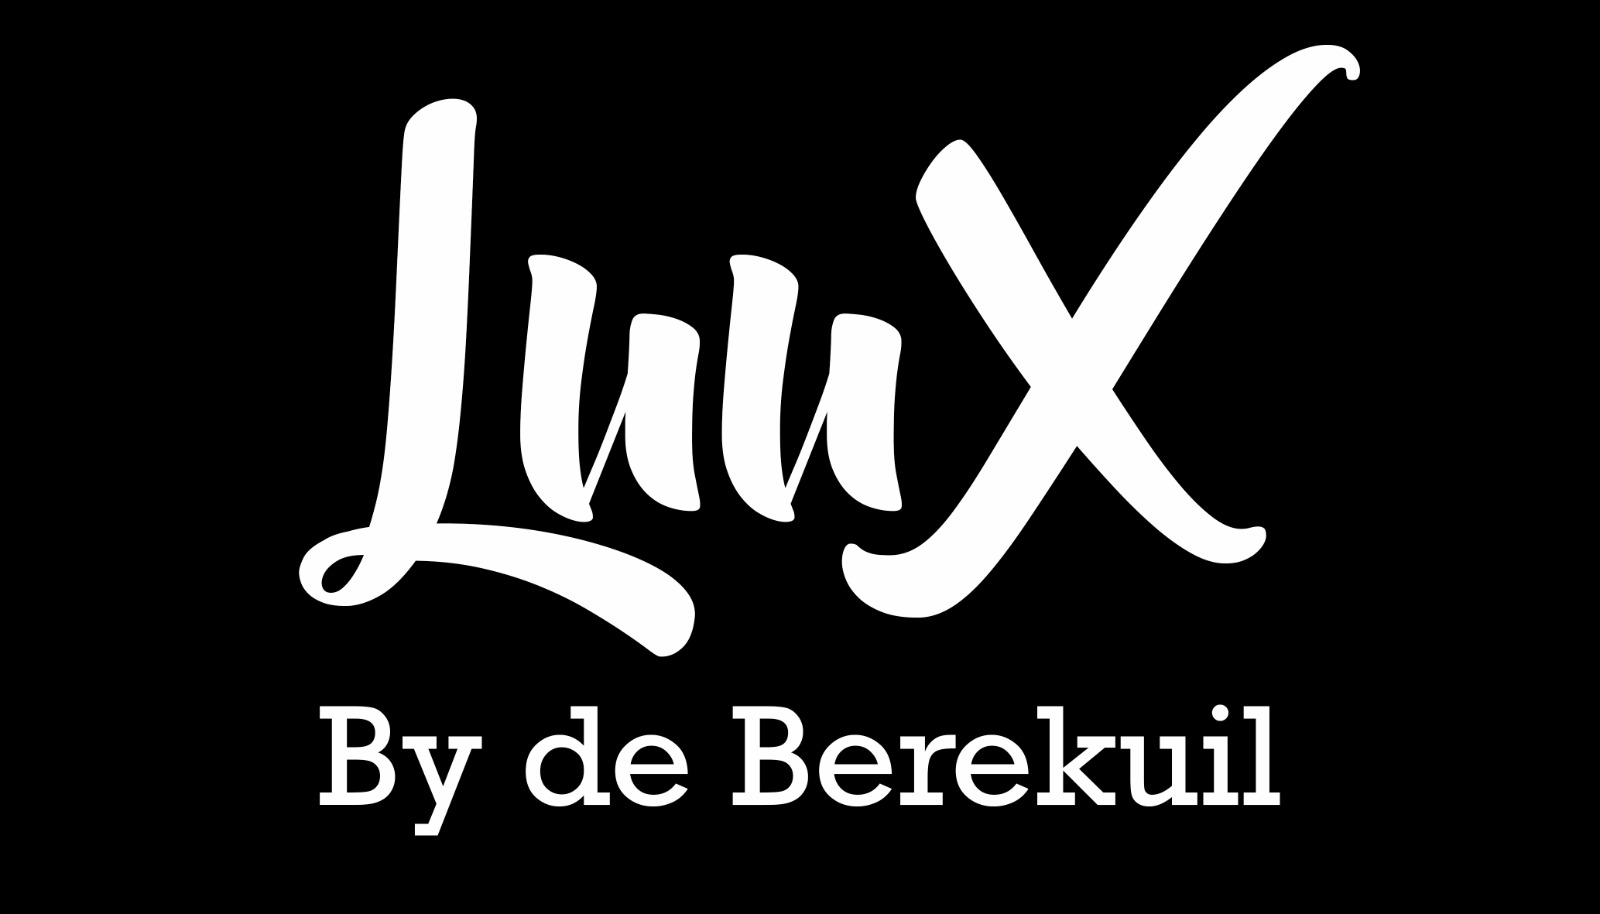 De Berekuil gaat verder als LuuX by de Berekuil